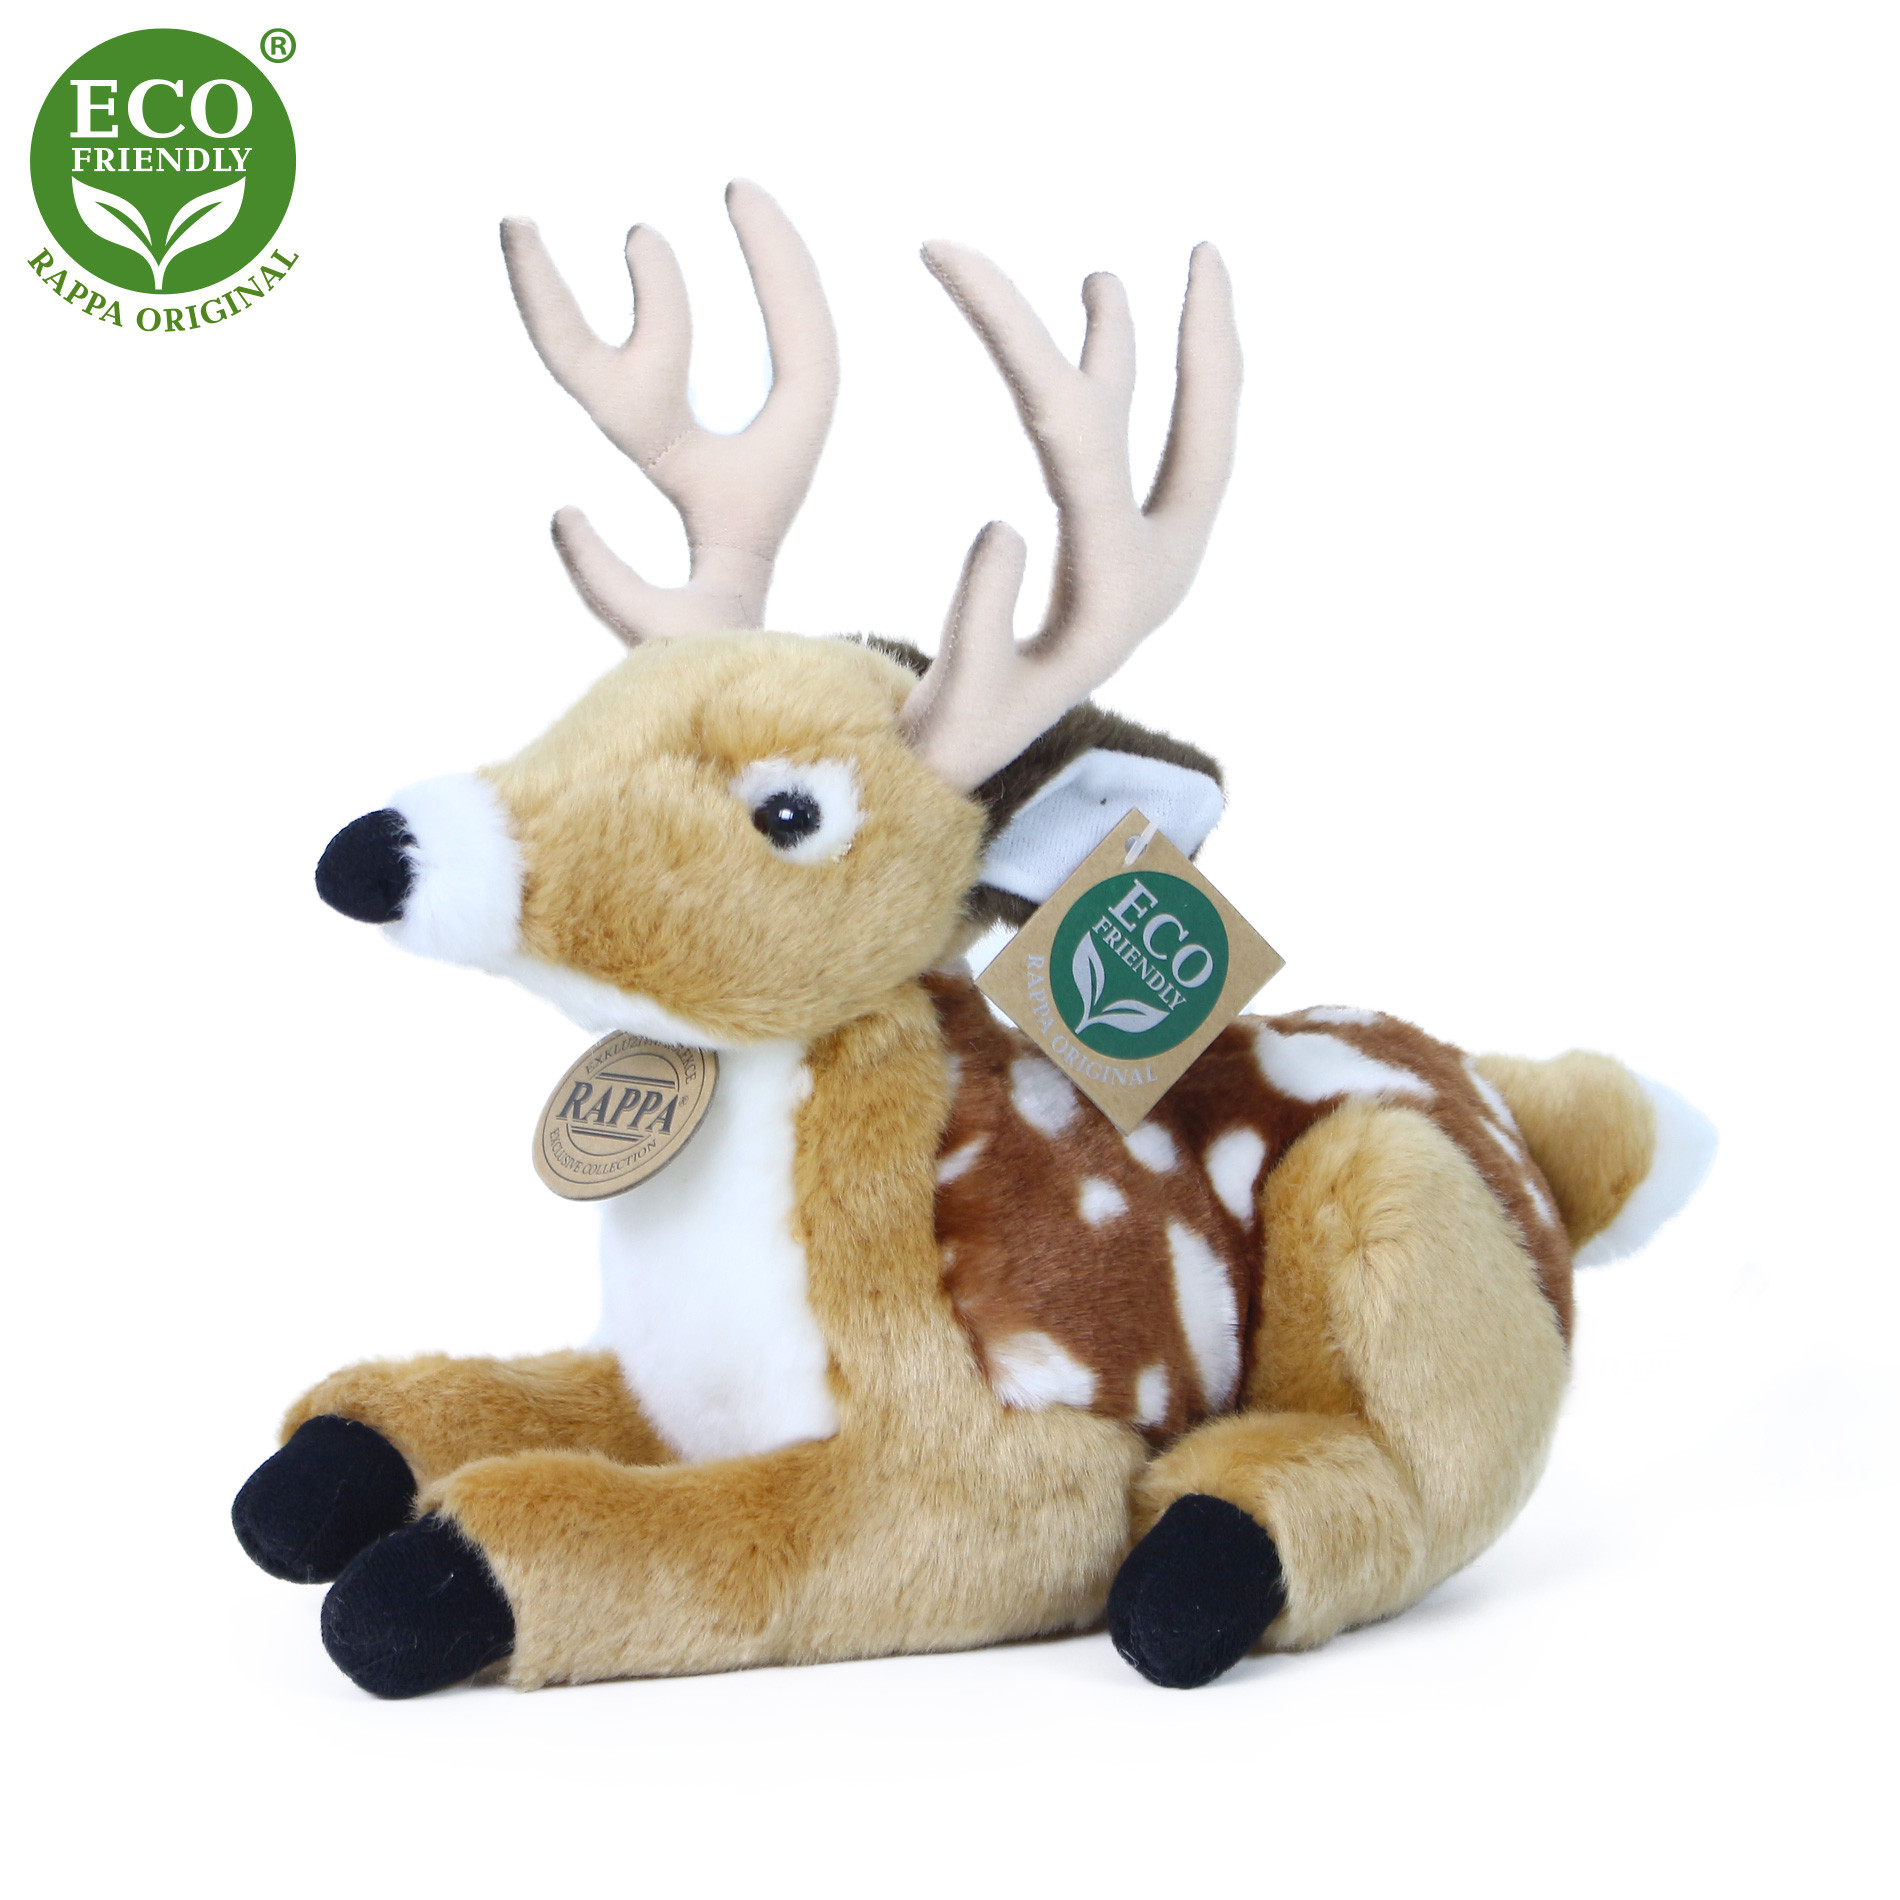 Plush deer/fawn 21 cm ECO-FRIENDLY